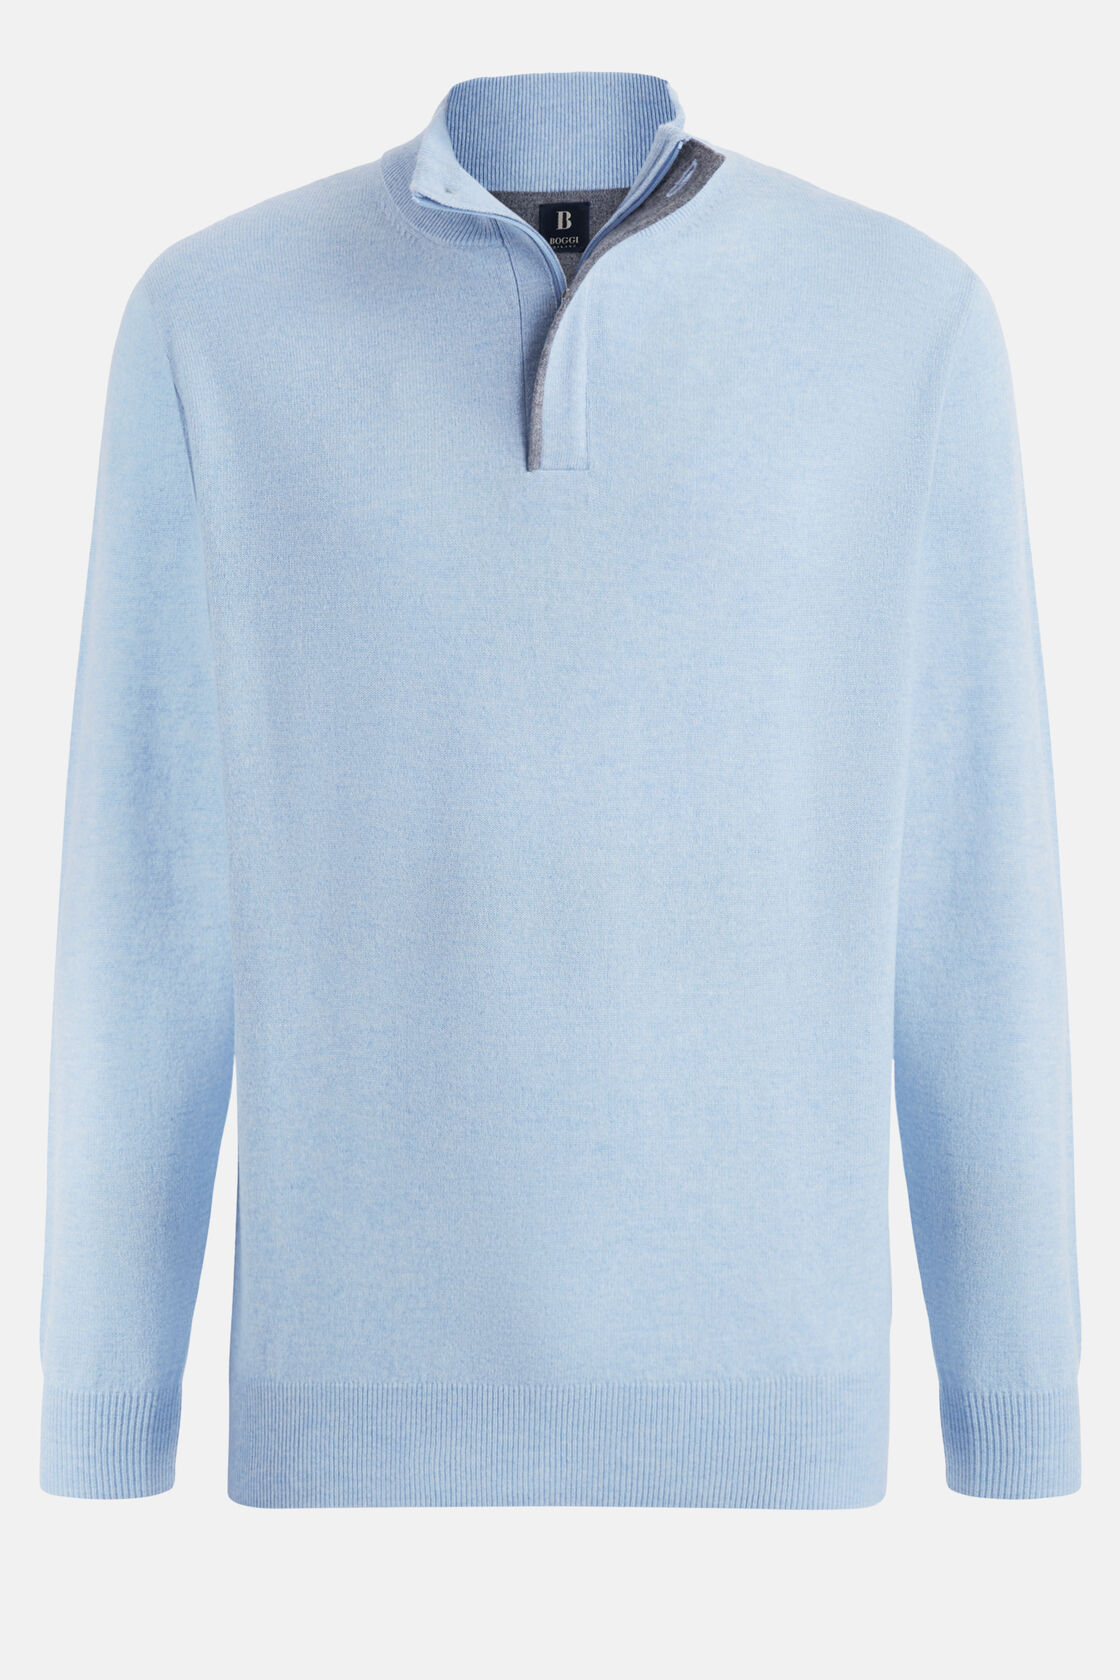 Sky Blue Wool/Cashmere Half Zip Jumper, , hi-res